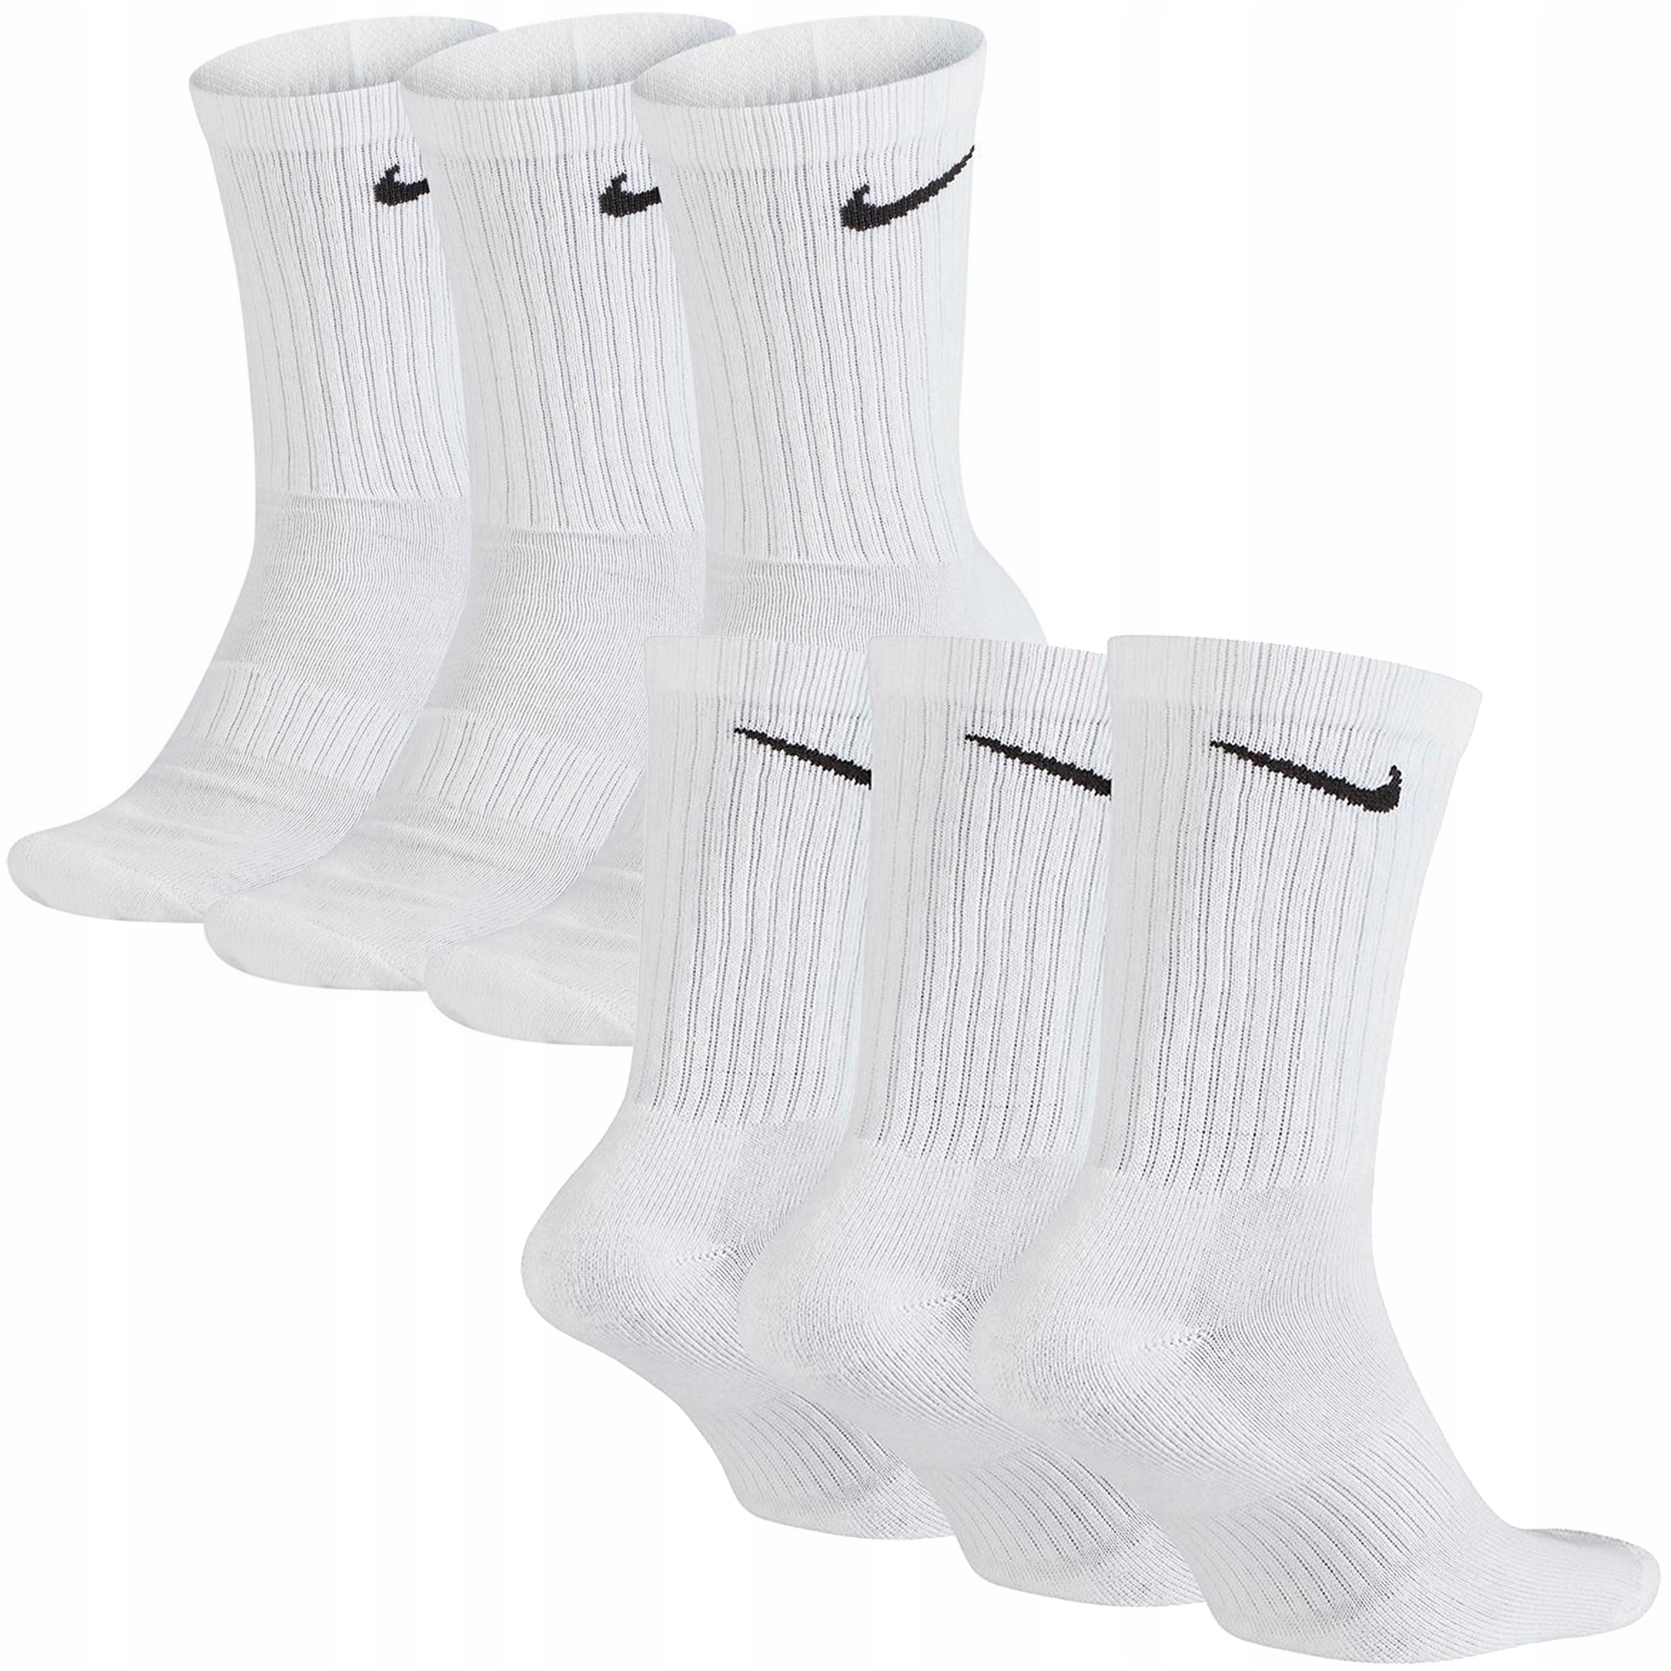 Nike ponožky ponožky biele vysoké bavlnené SX7664-100 M